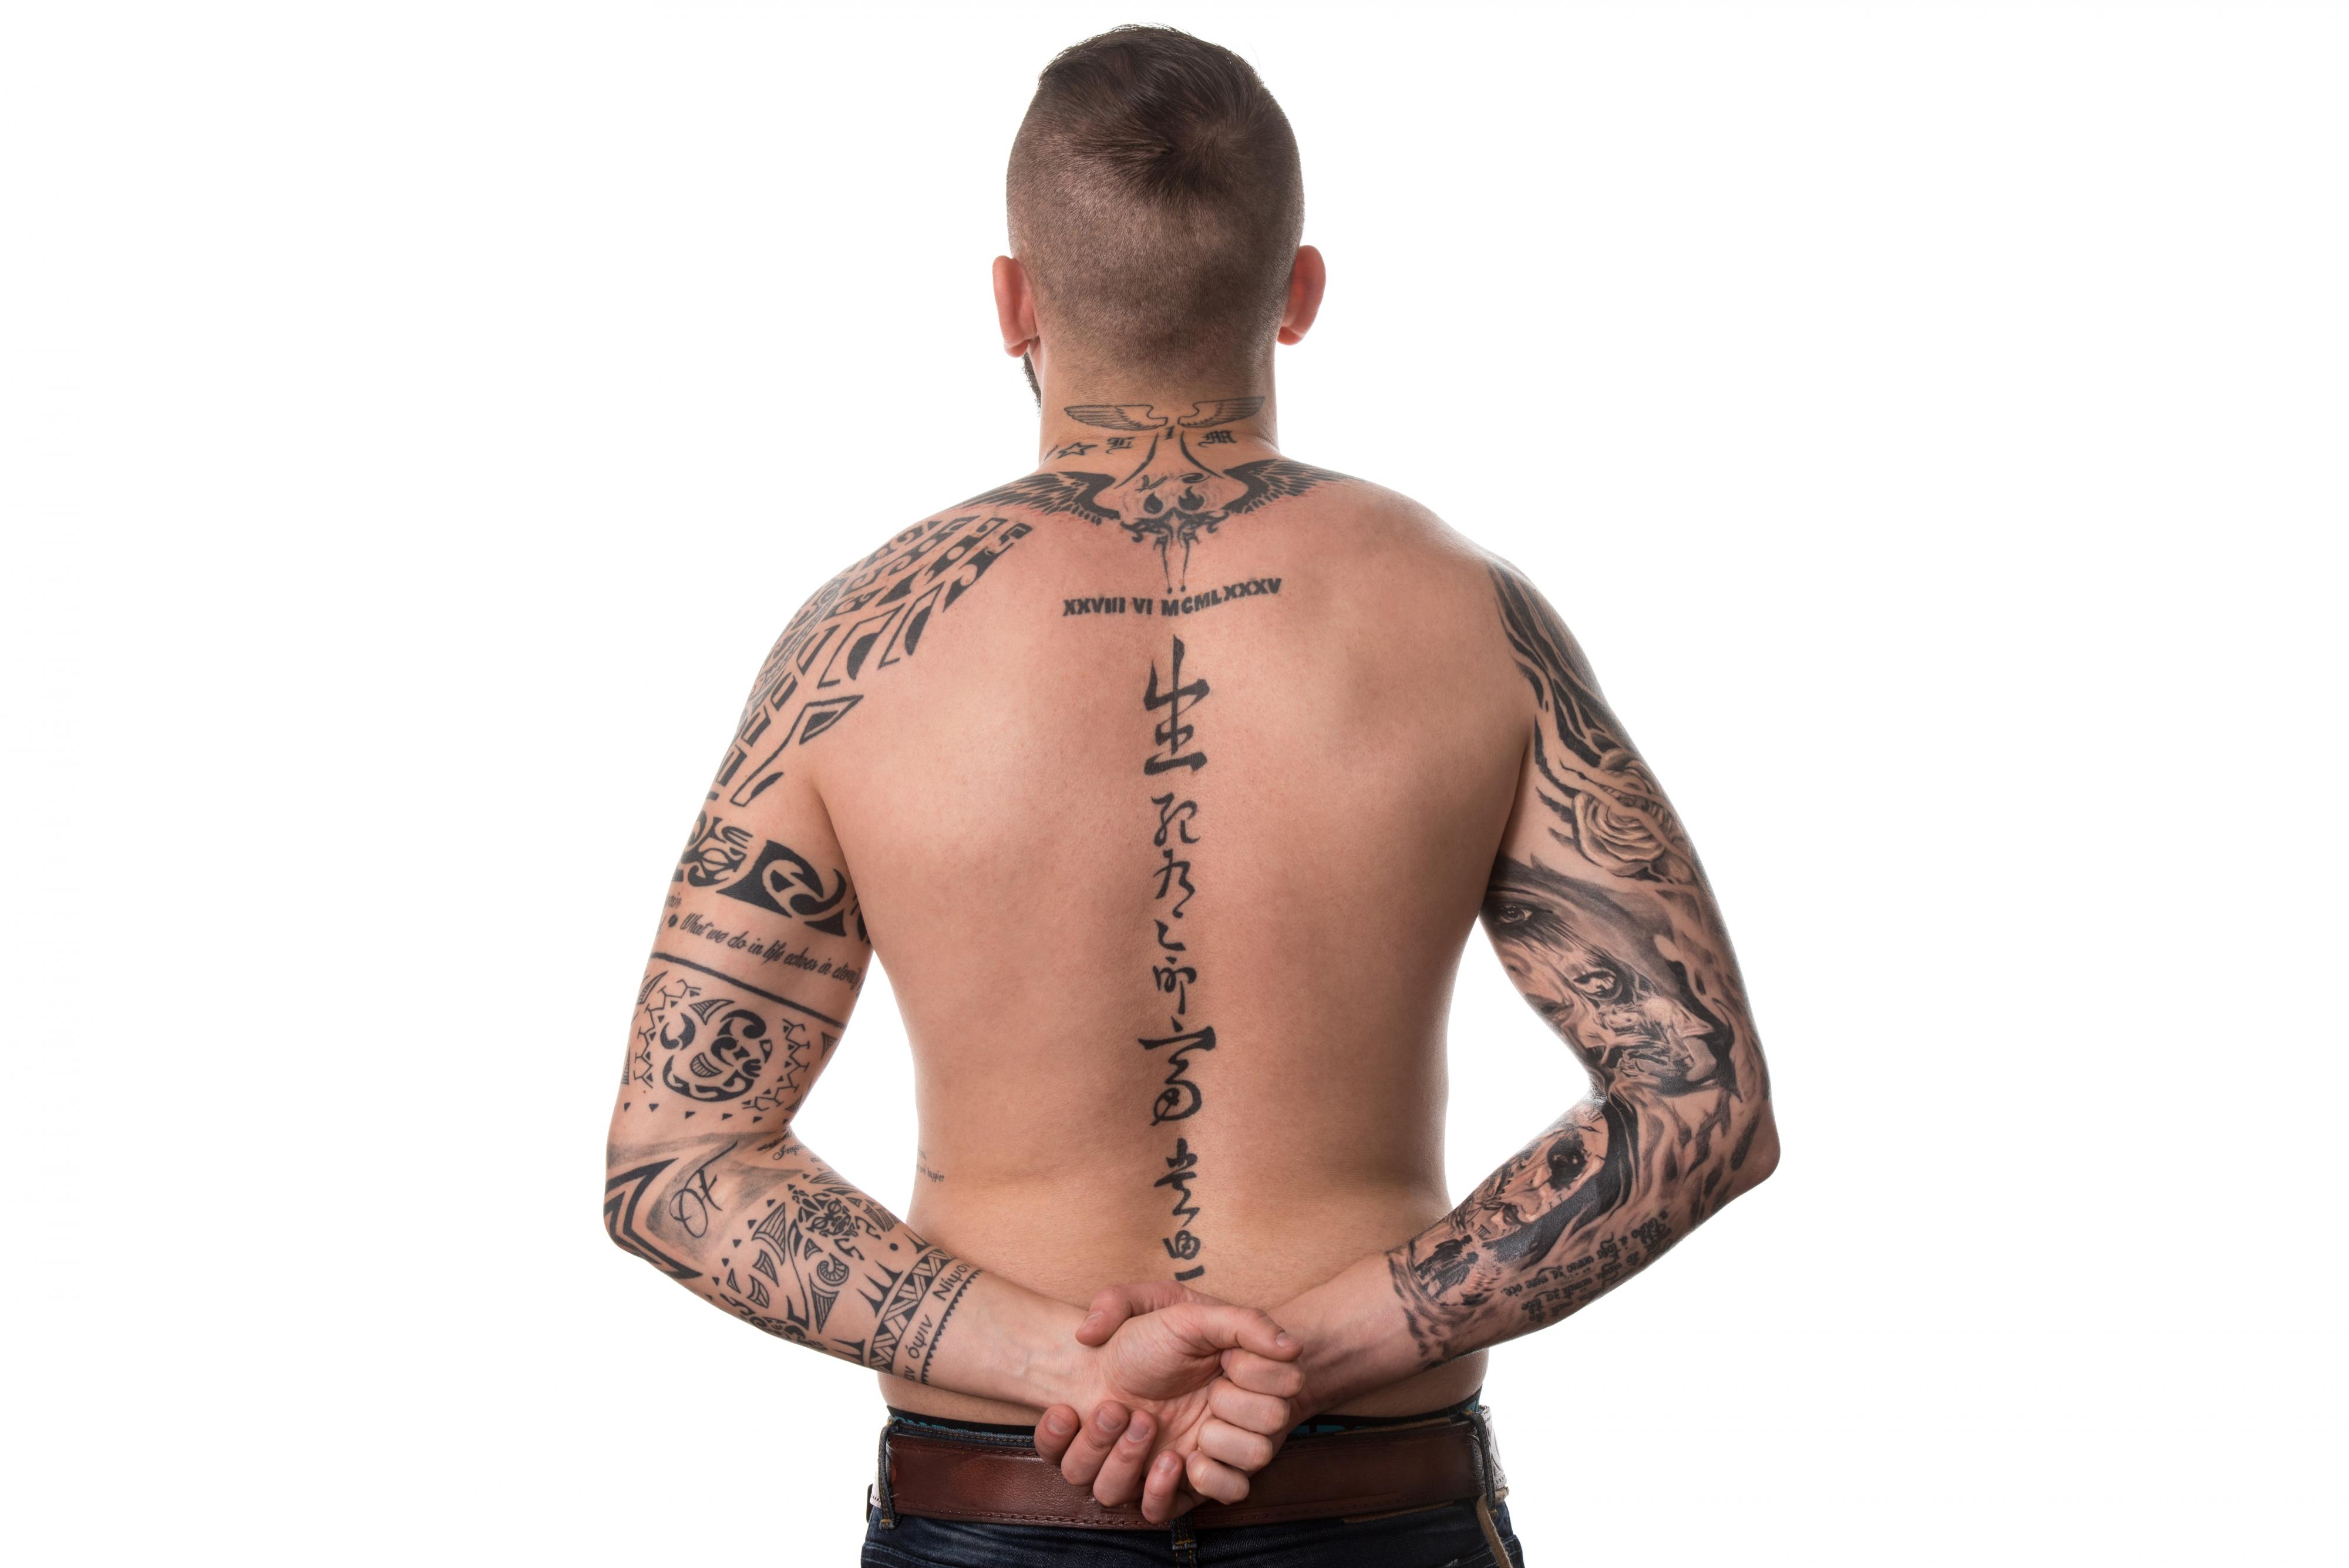 Onderzoek: 'mannen met tattoos gaan sneller vreemd' .